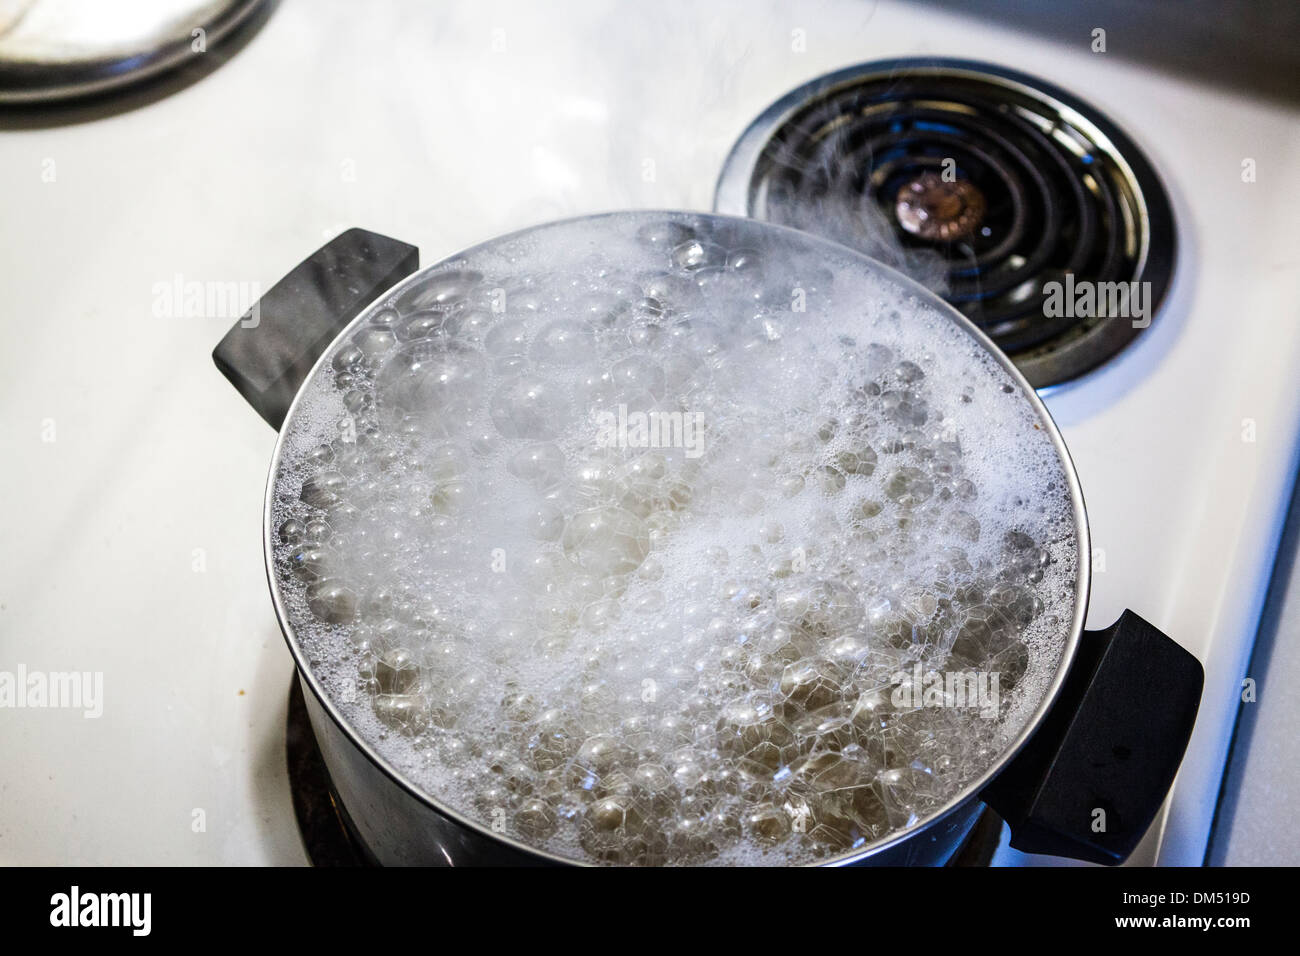 https://c8.alamy.com/comp/DM519D/a-steaming-pot-of-boiling-water-DM519D.jpg